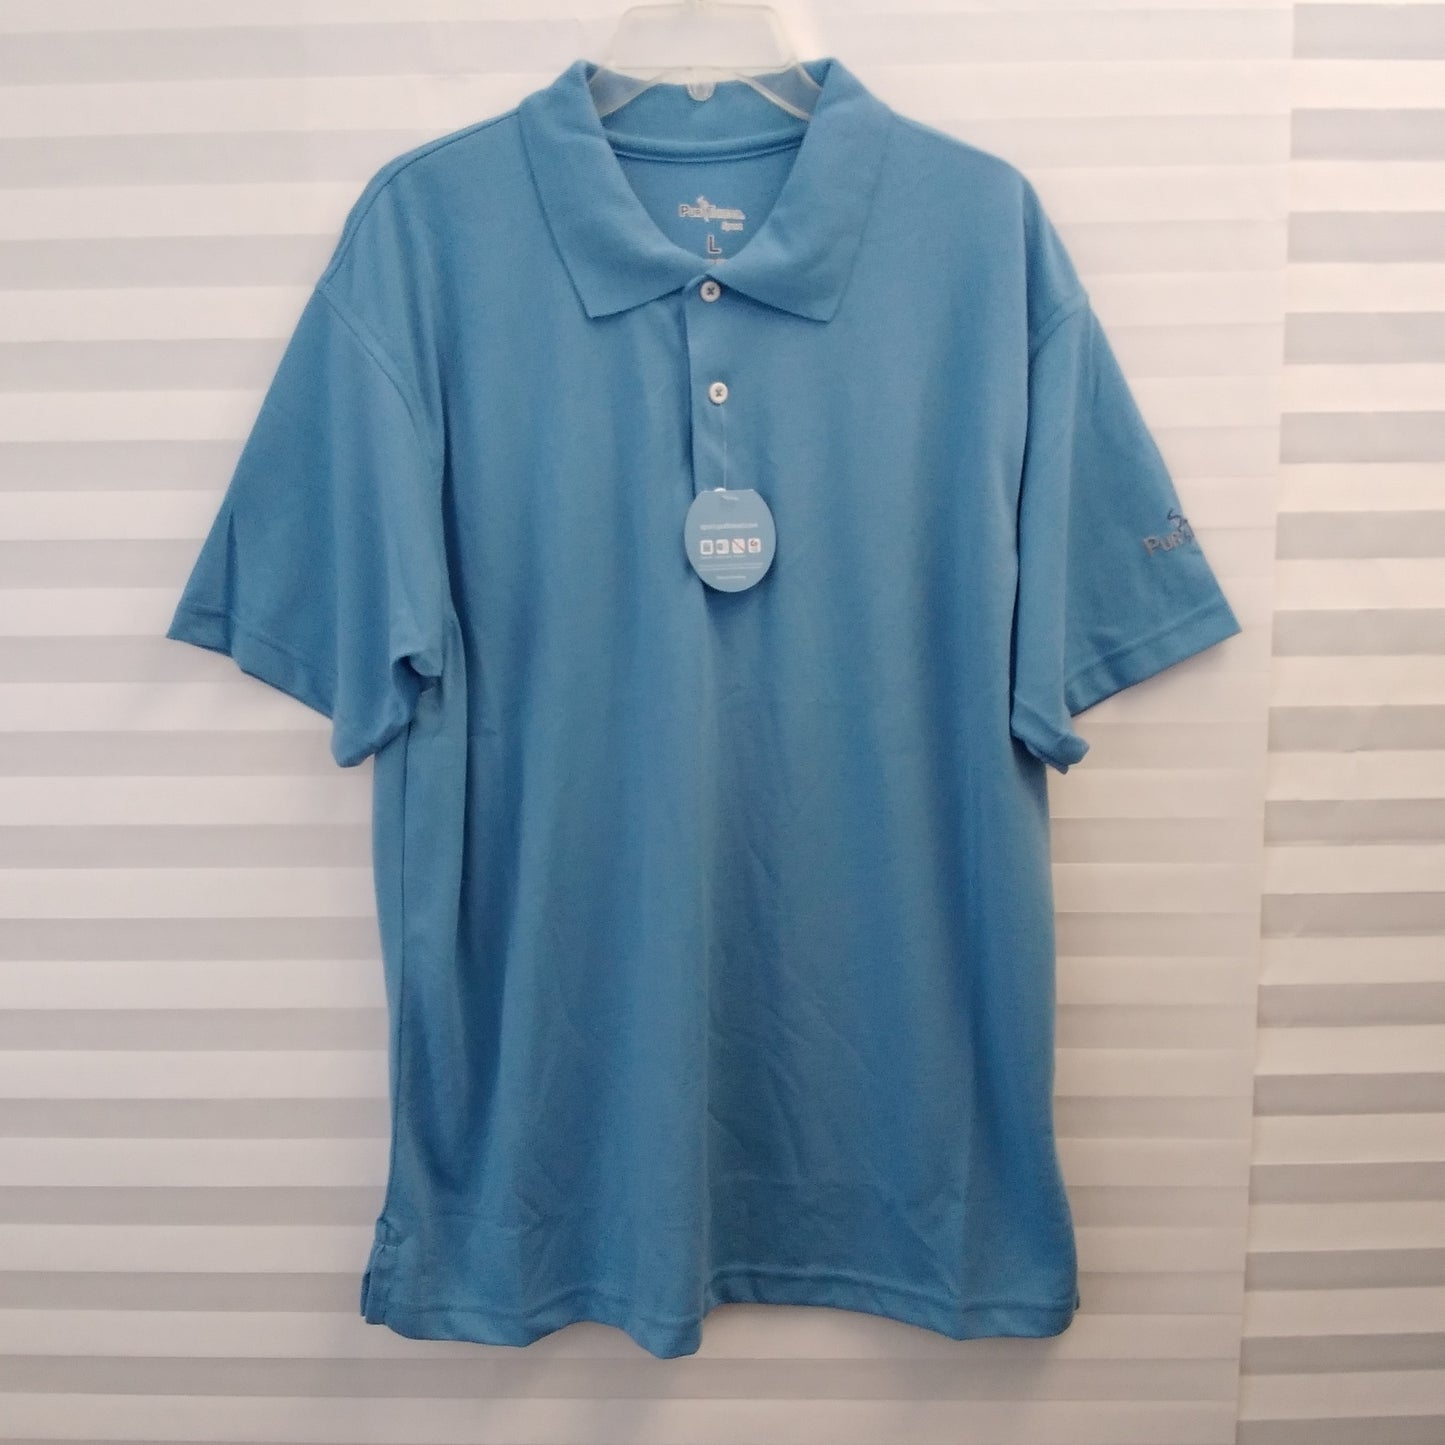 NWT - Pur Thread Sport Men's Blue Polo Shirt - Size: L